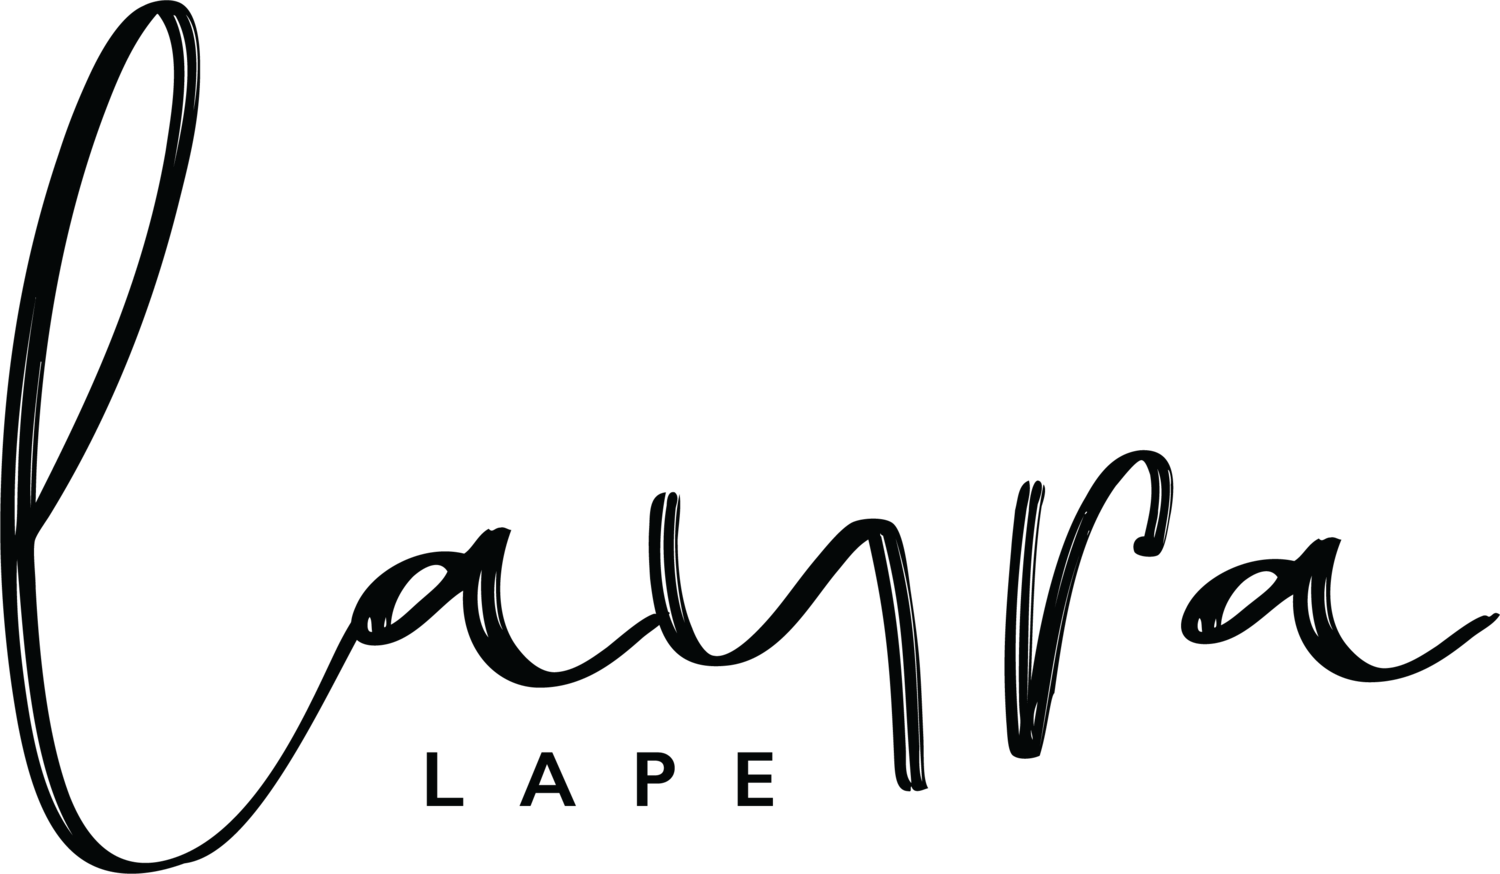 Laura Lape